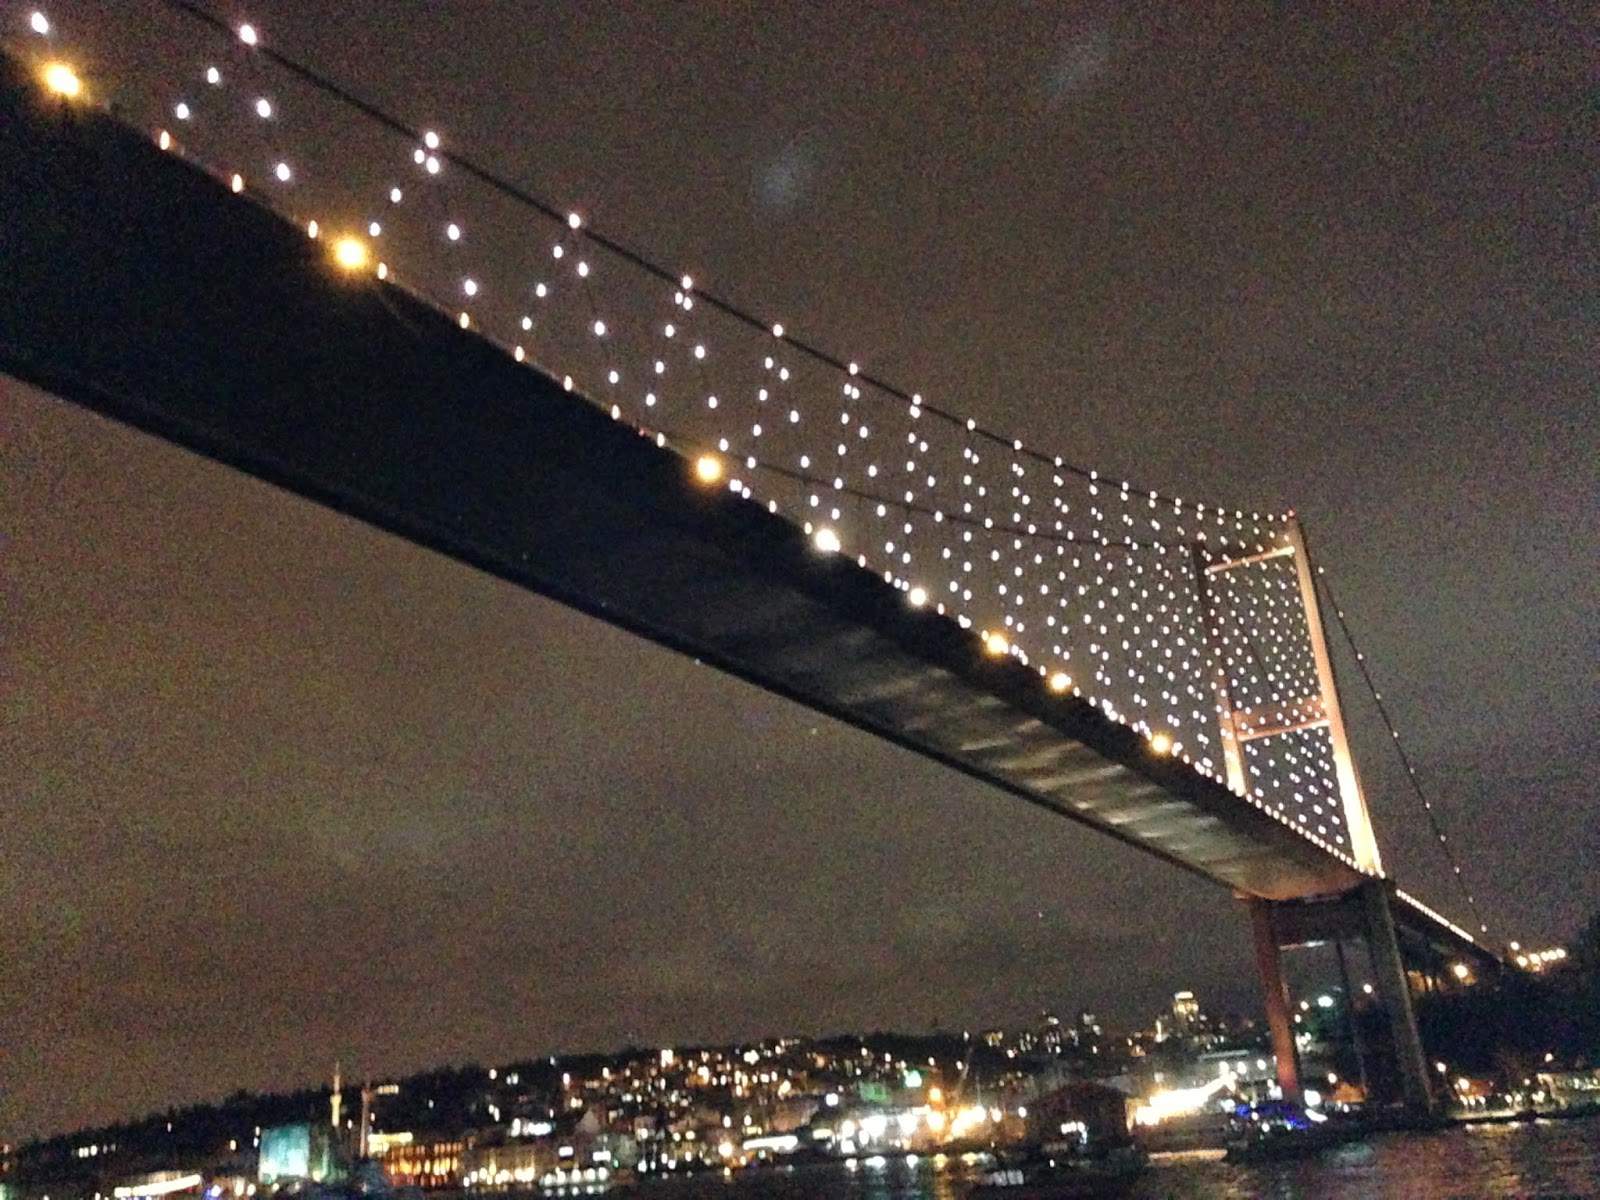 Boğaziçi Köprüsü on New Year's Eve in Istanbul, Turkey